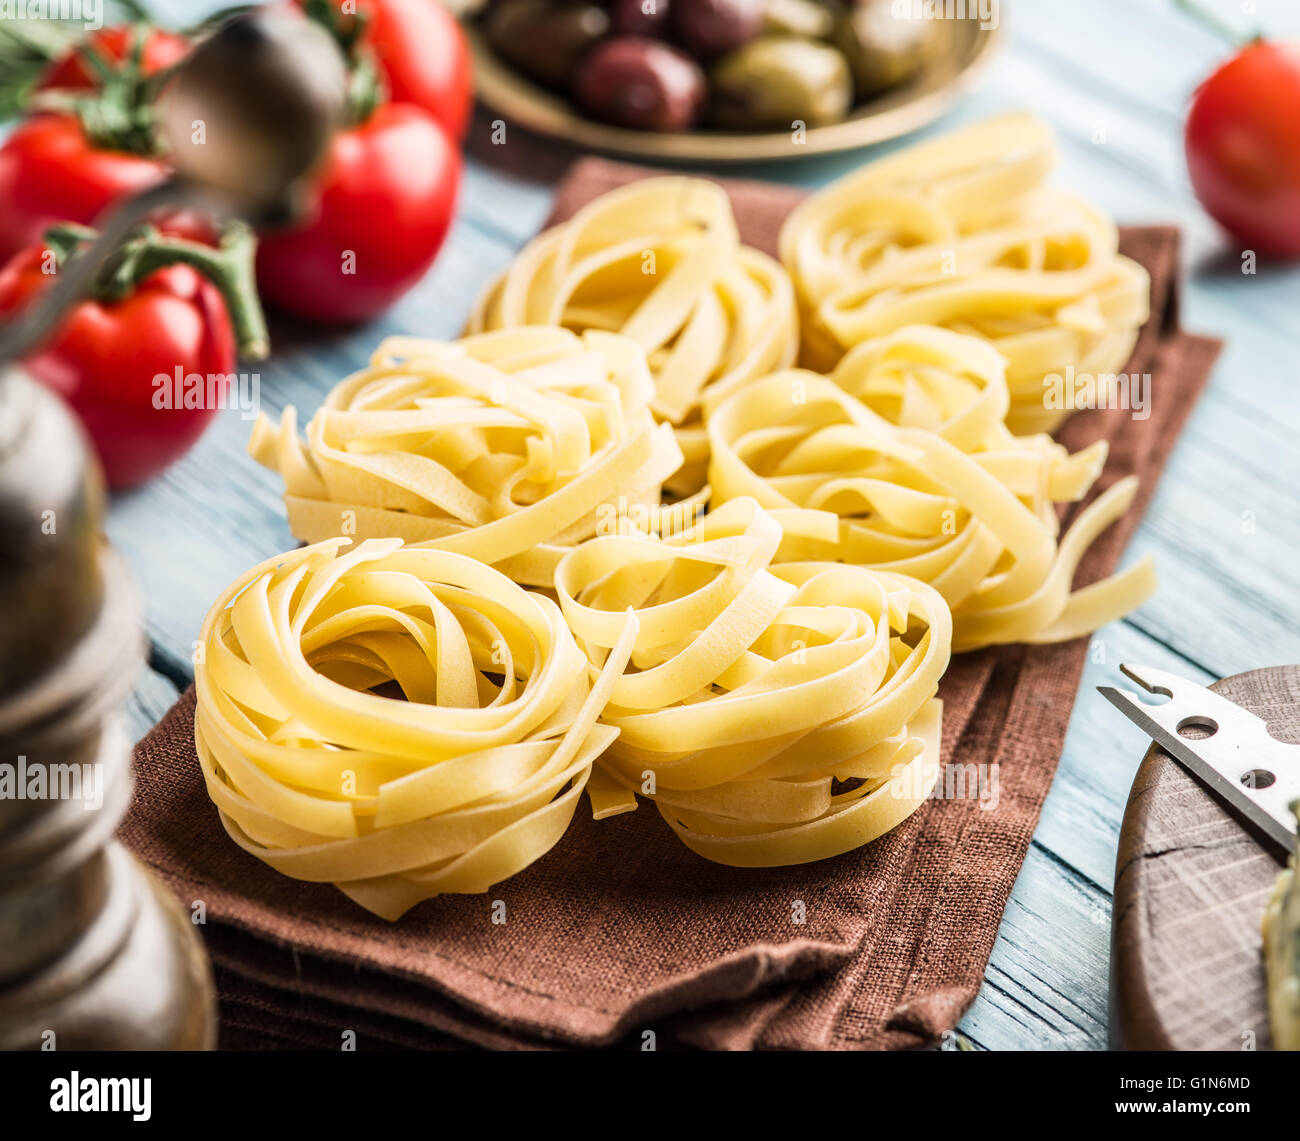 Ingredienti per la pasta. Cherry-pomodori, spaghetti e spezie sul tavolo di legno. Foto Stock